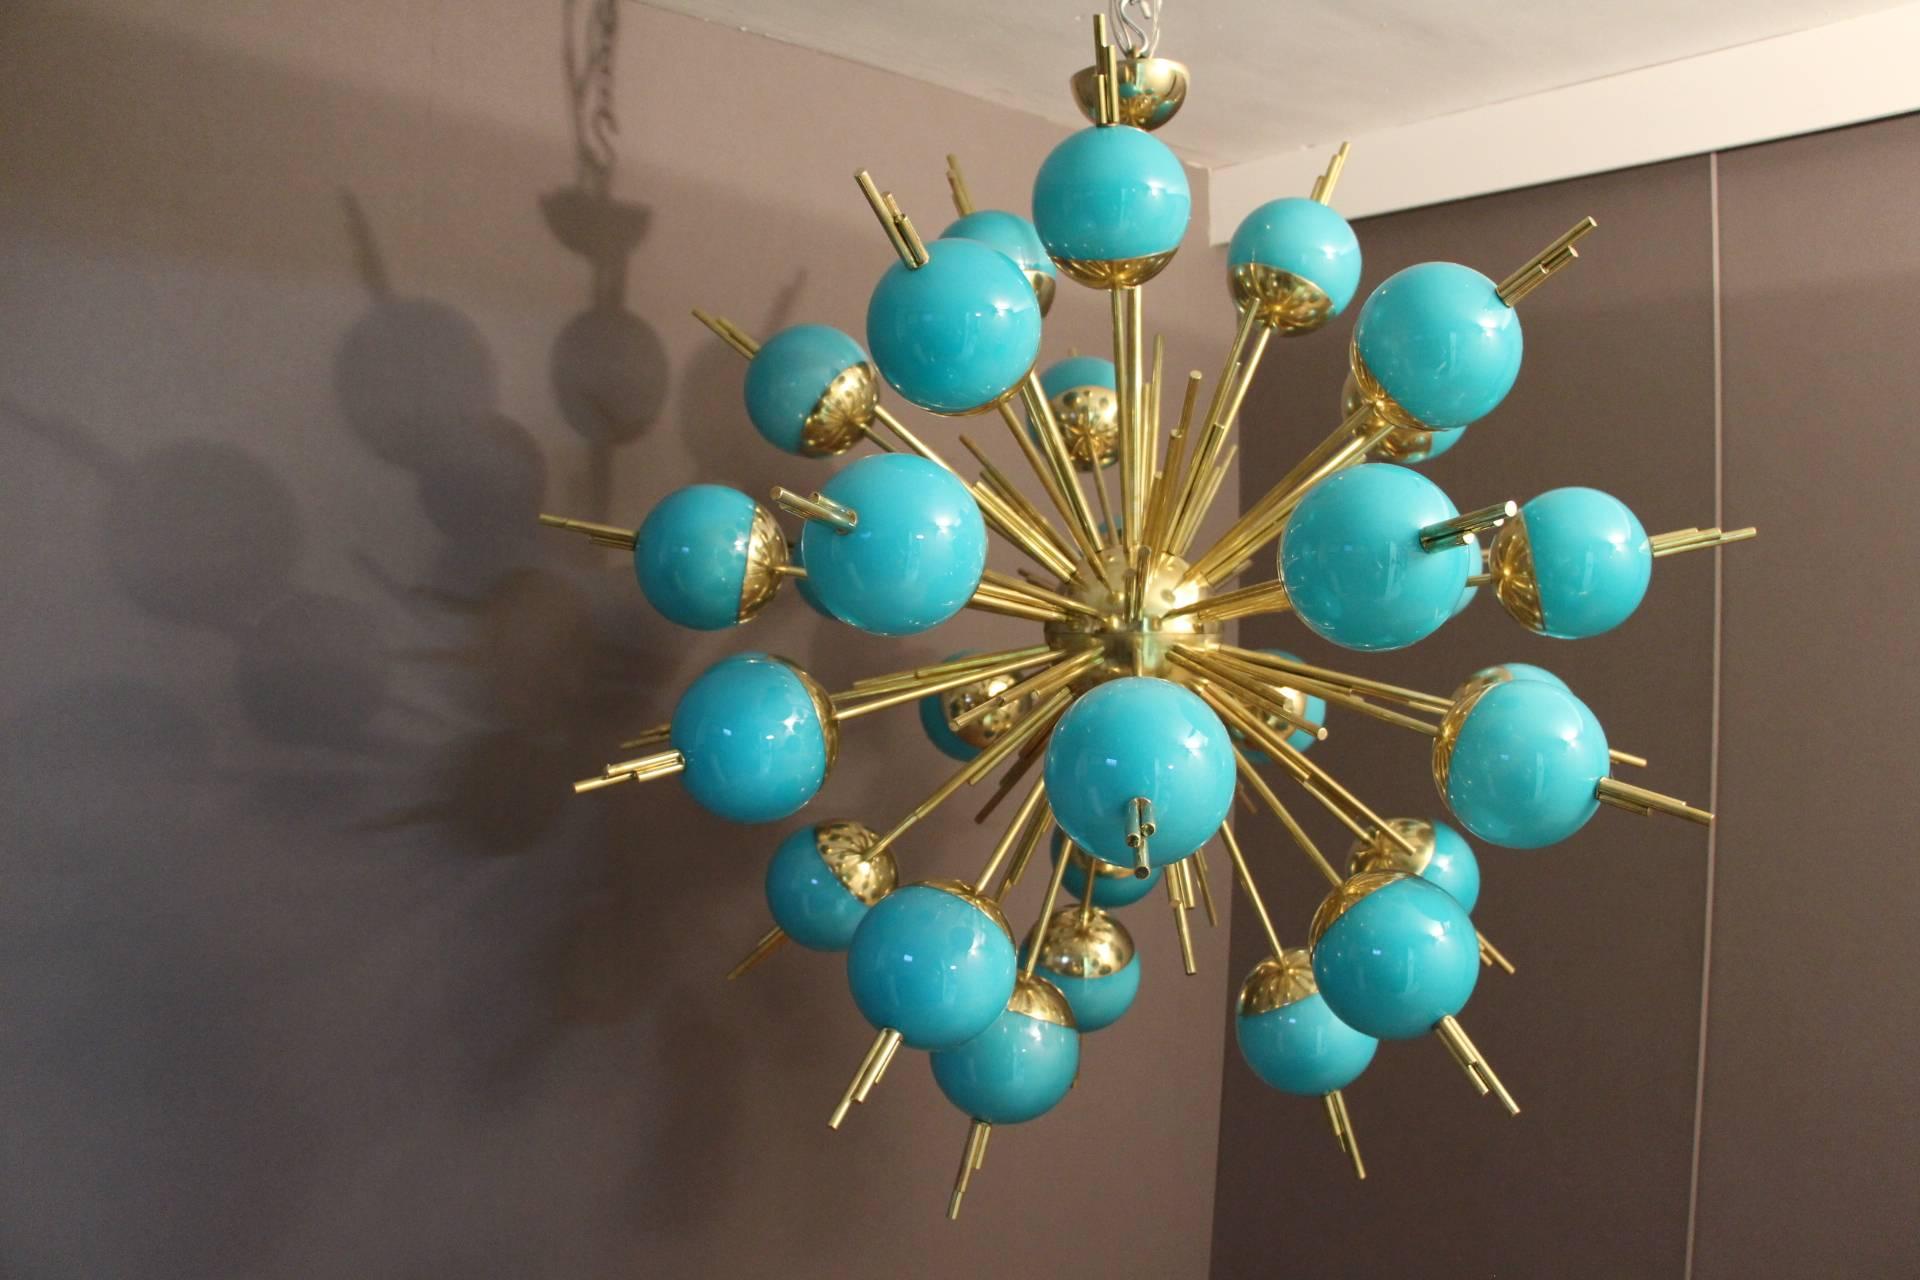 Ce lustre Sputnik très inhabituel comprend 30 globes en verre turquoise montés sur des tiges en laiton.
Lorsque la lumière est allumée, ses globes turquoise deviennent bleu clair et il est toujours aussi magnifique.
Accepte les ampoules E14. Câblé